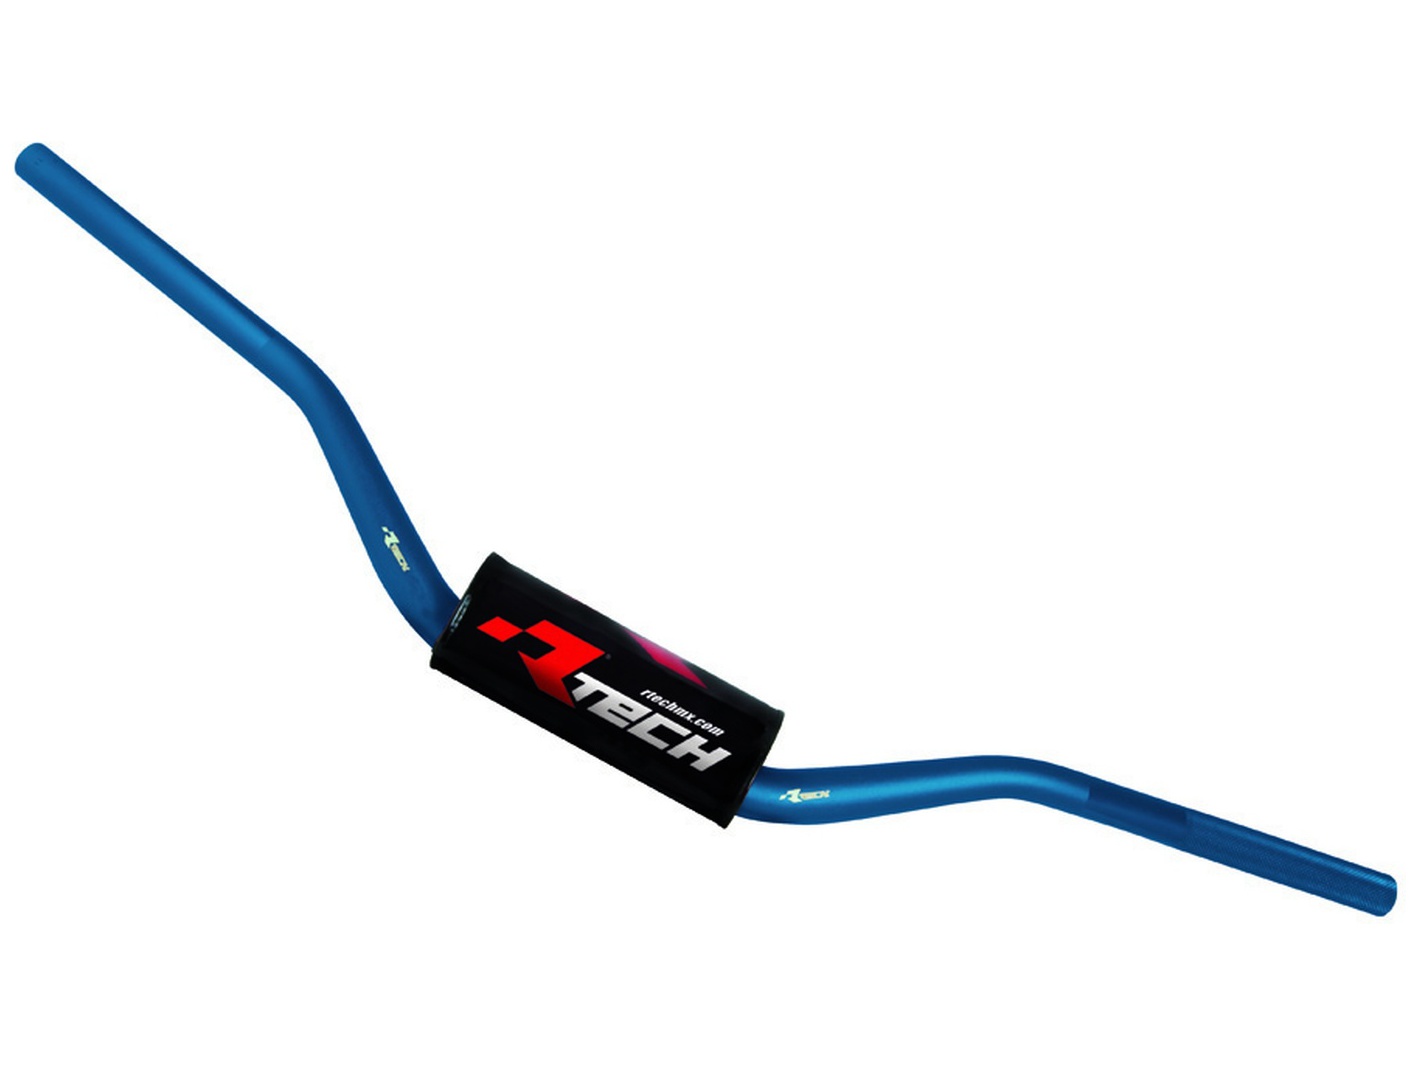 Obrázek produktu řídítka (Michael P.) s proměnlivým průřezem o průměru 28,6 - 22 mm s chráničem, RTECH (modrá) R-MNMP0BL0028